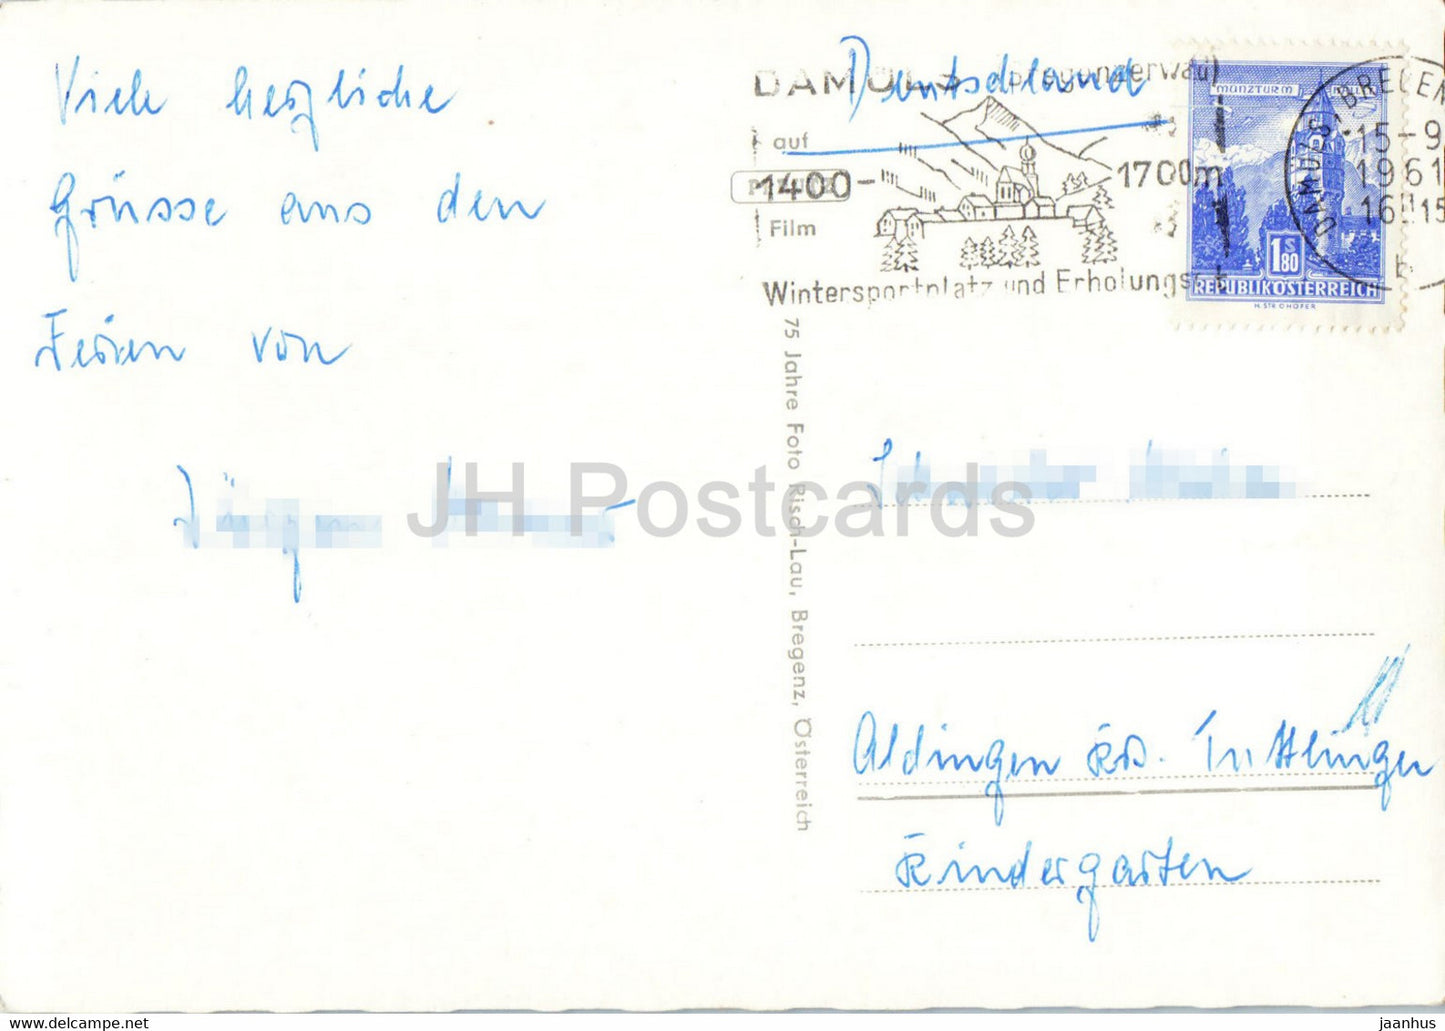 Damuls i Bregenzerwald - Vorarlberg - old postcard - 1961 - Austria - used